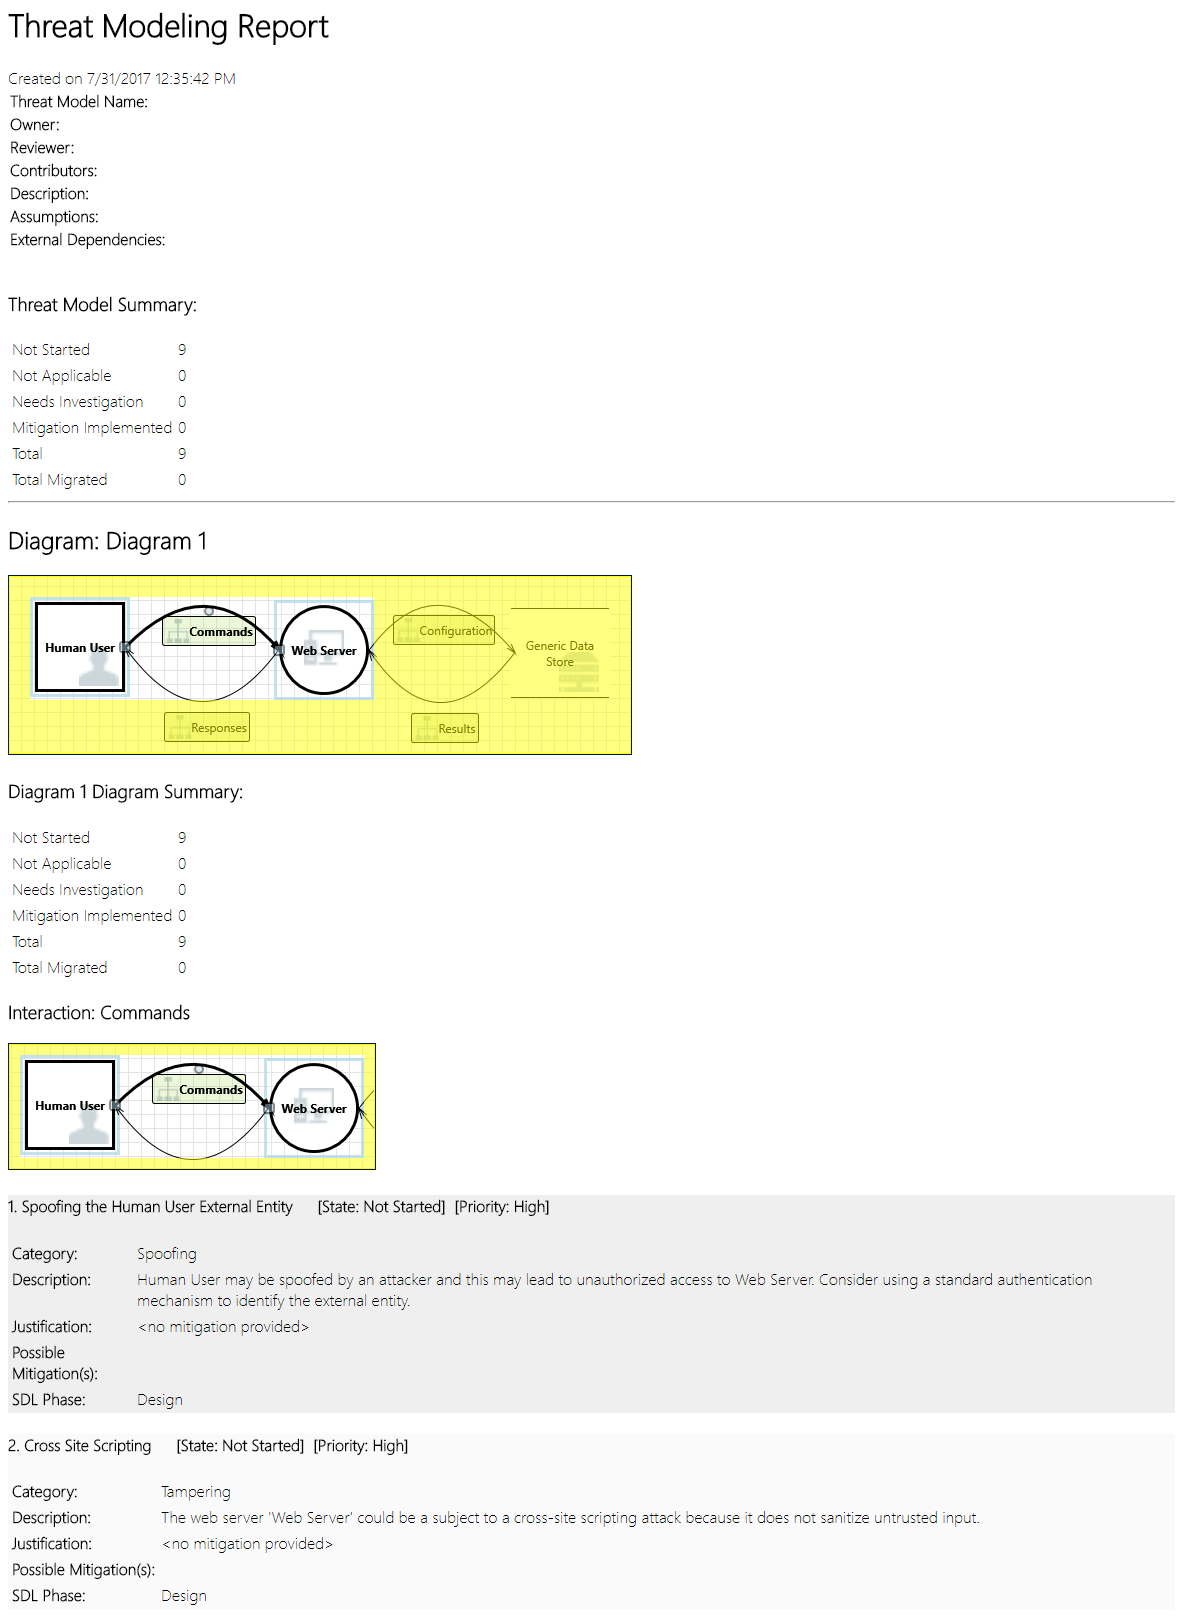 Captura de ecrã a mostrar um exemplo de Relatório de Modelação de Ameaças, incluindo um resumo, diagramas e outras informações.